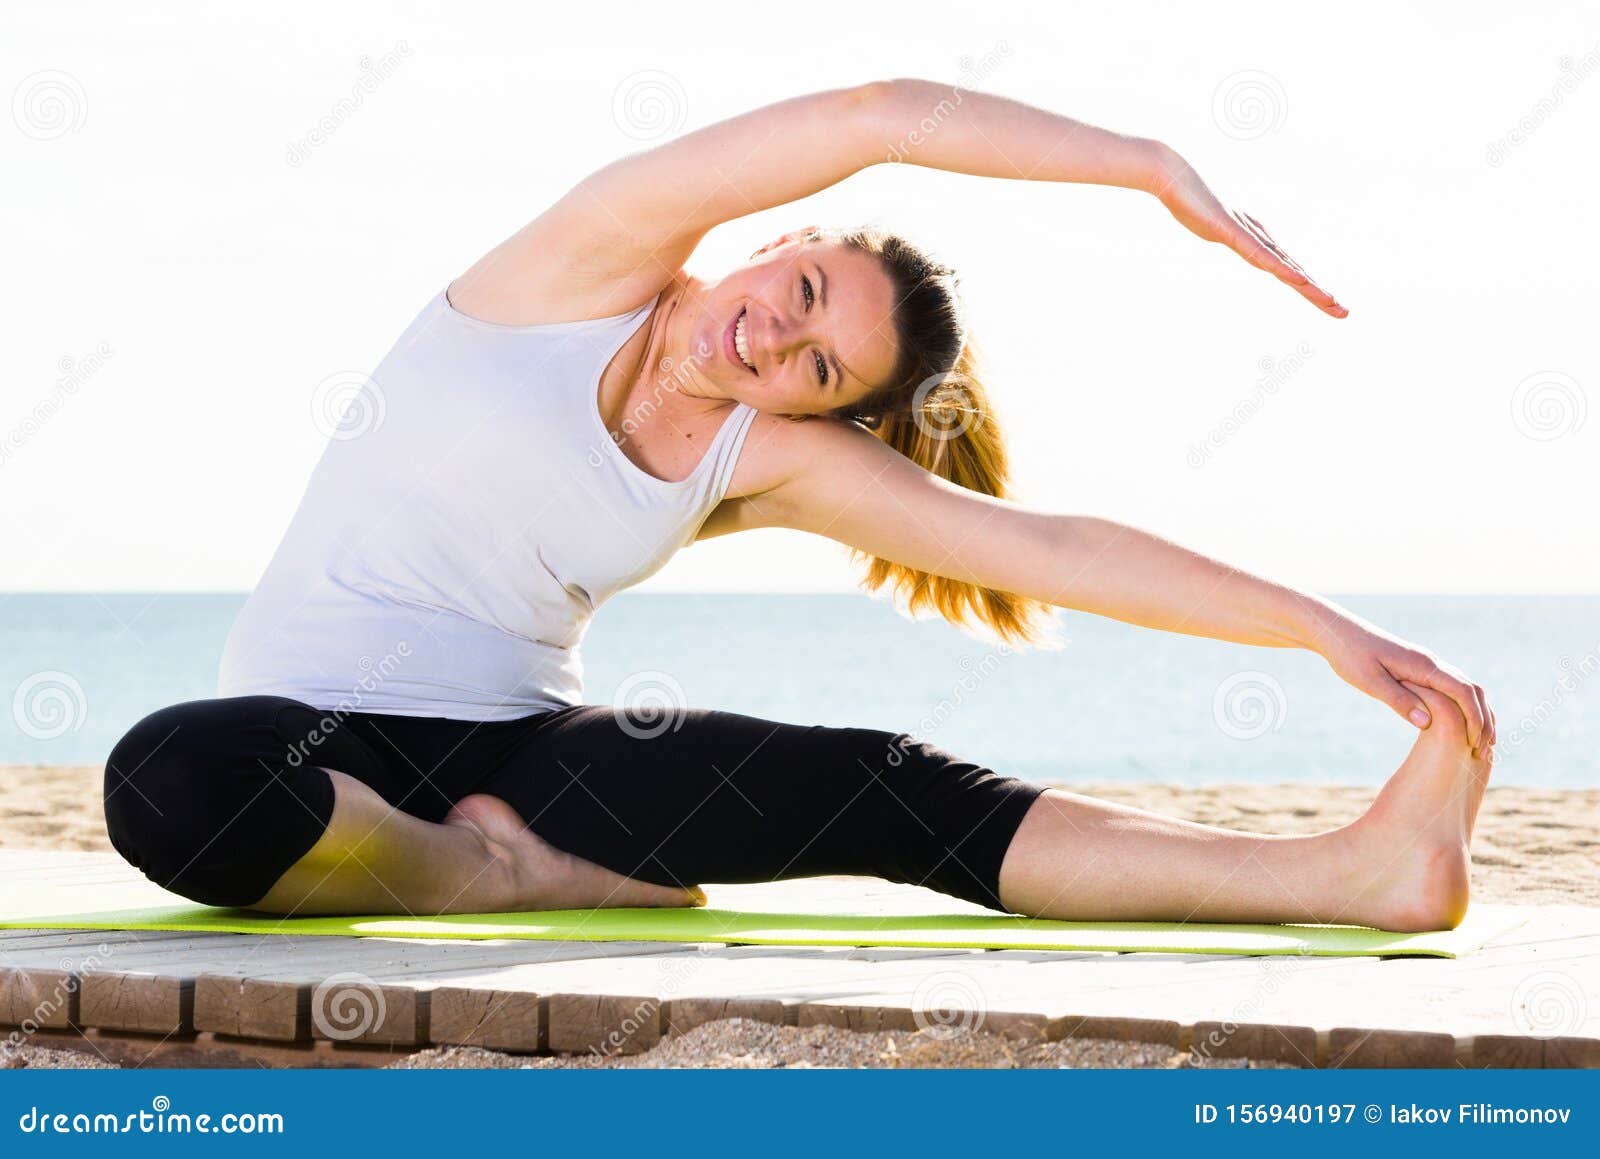 https://thumbs.dreamstime.com/z/mulher-fazendo-yoga-sentada-jovens-mulheres-poses-de-ioga-sentadas-em-uma-praia-ensolarada-oceano-pela-manh%C3%A3-156940197.jpg